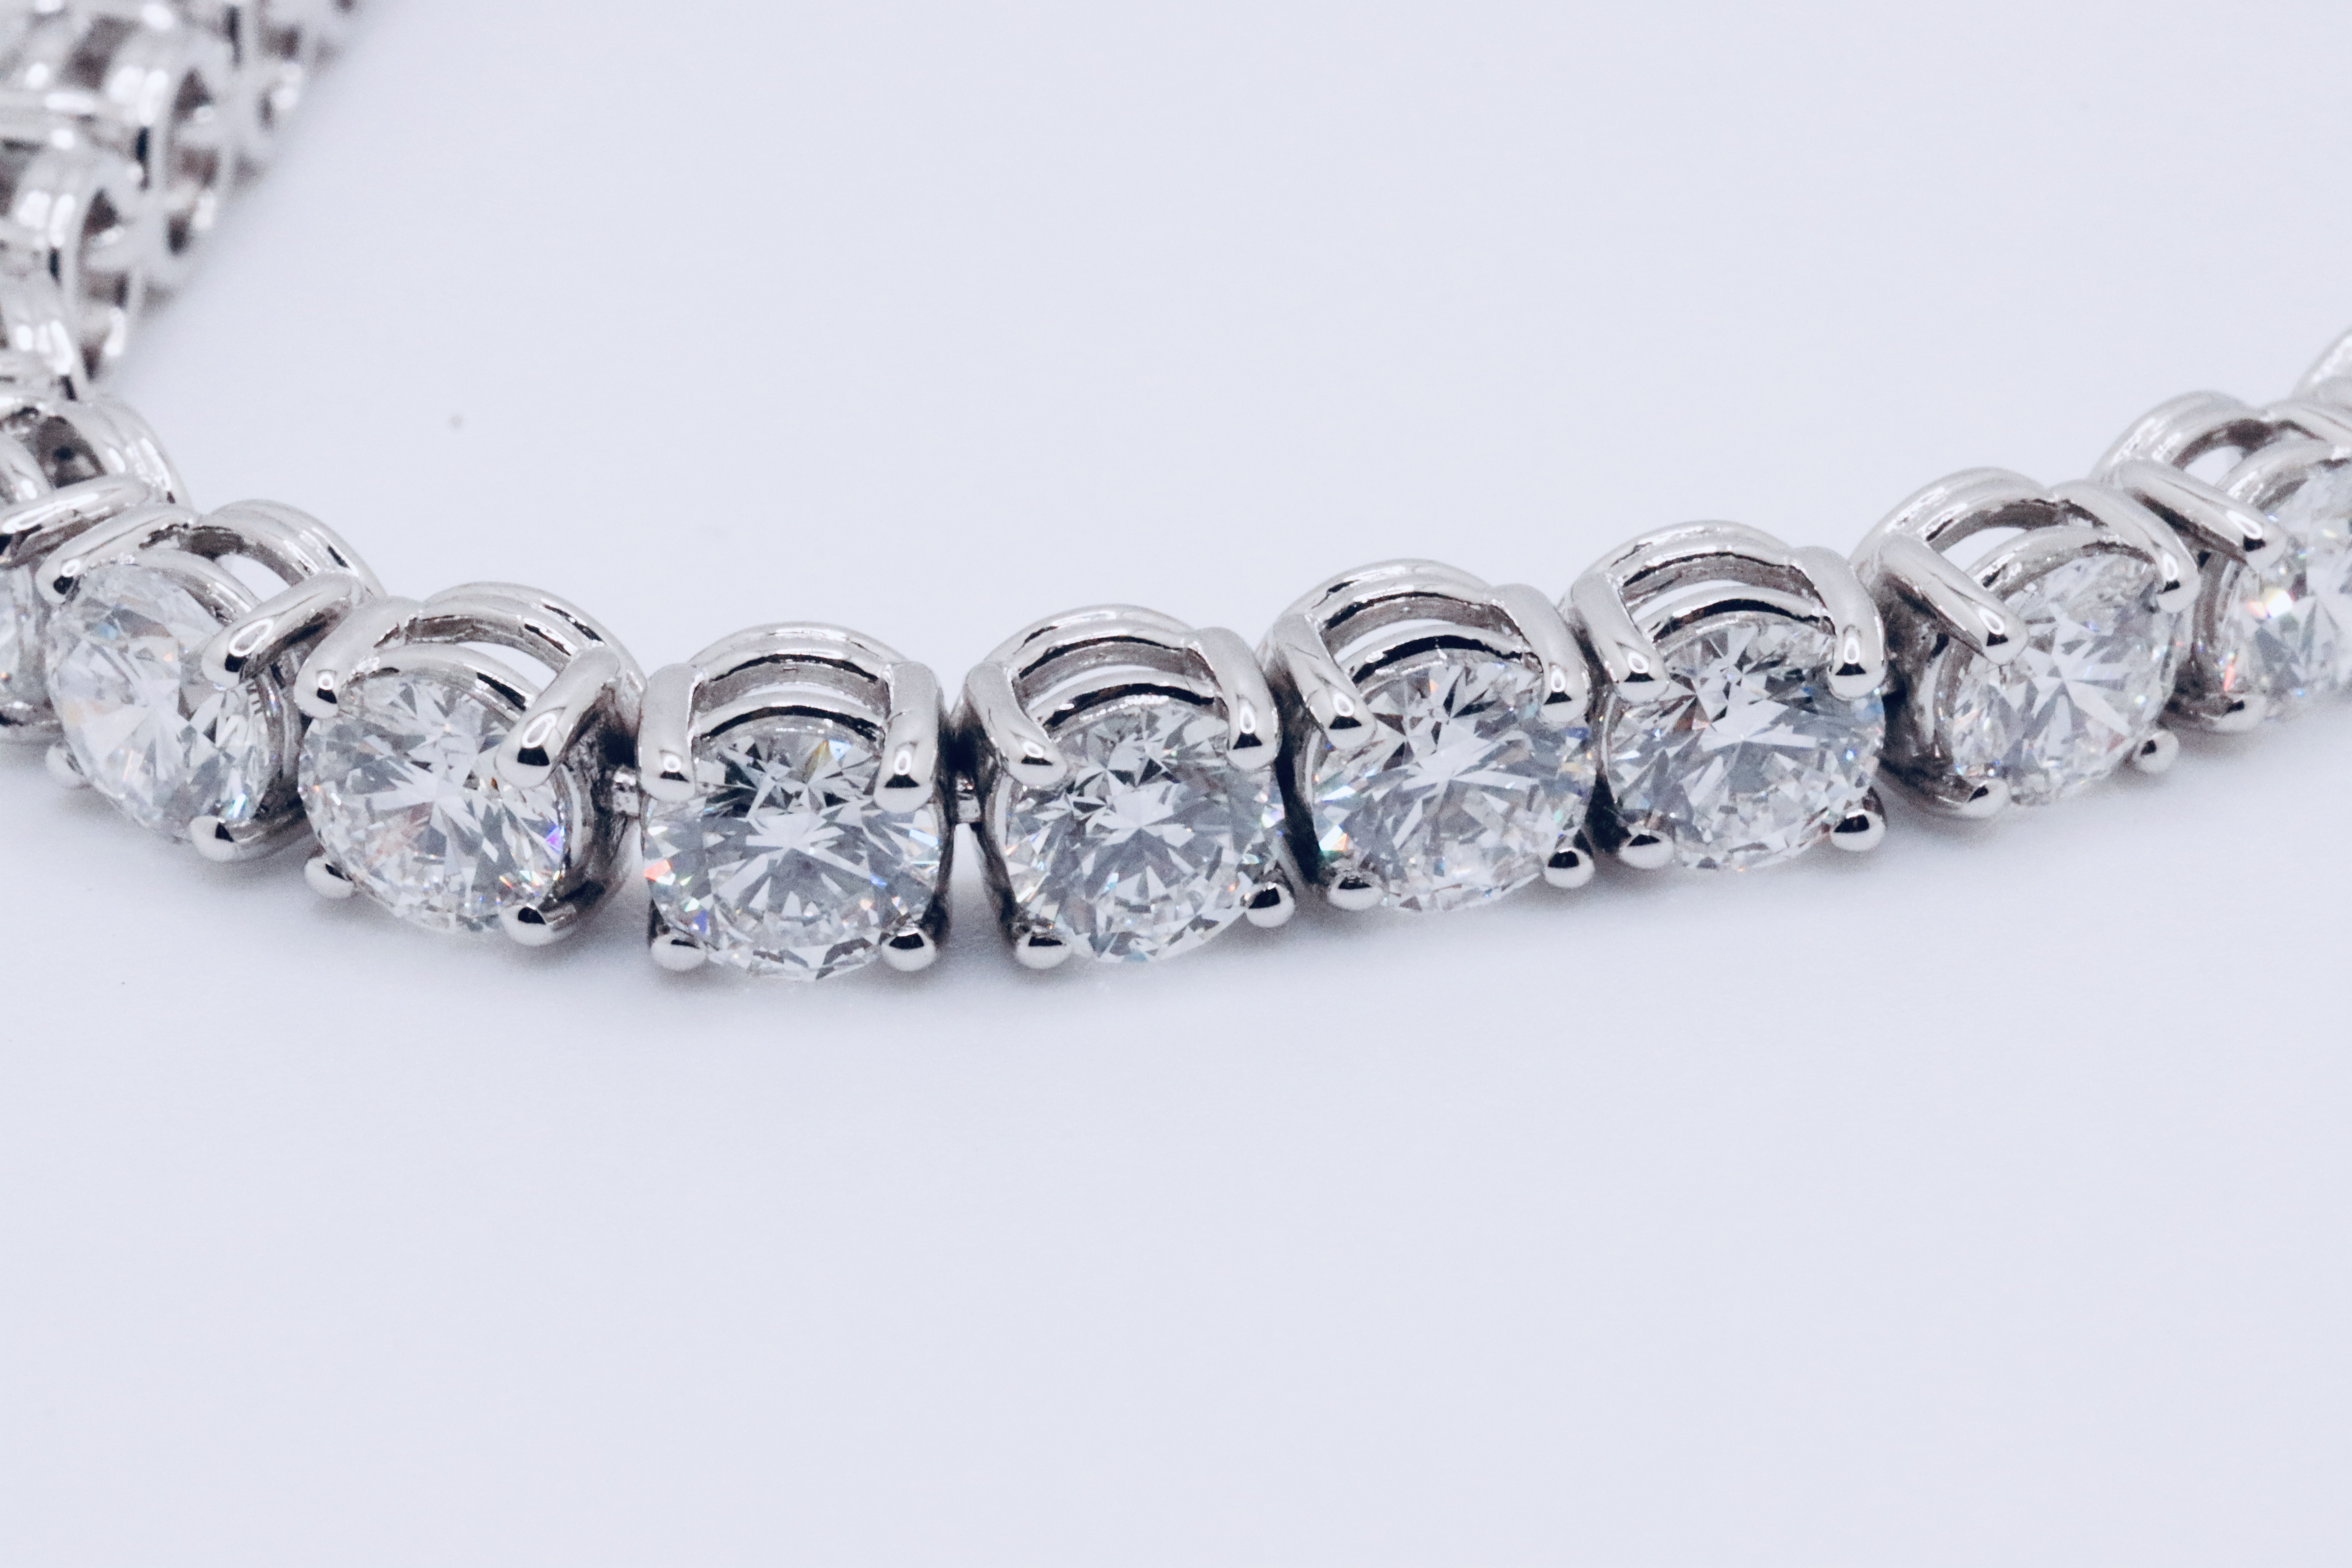 Round Brilliant Cut 14 Carat Diamond Tennis Bracelet D Colour VVS Clarity - 18Kt White Gold - IGI - Image 6 of 31